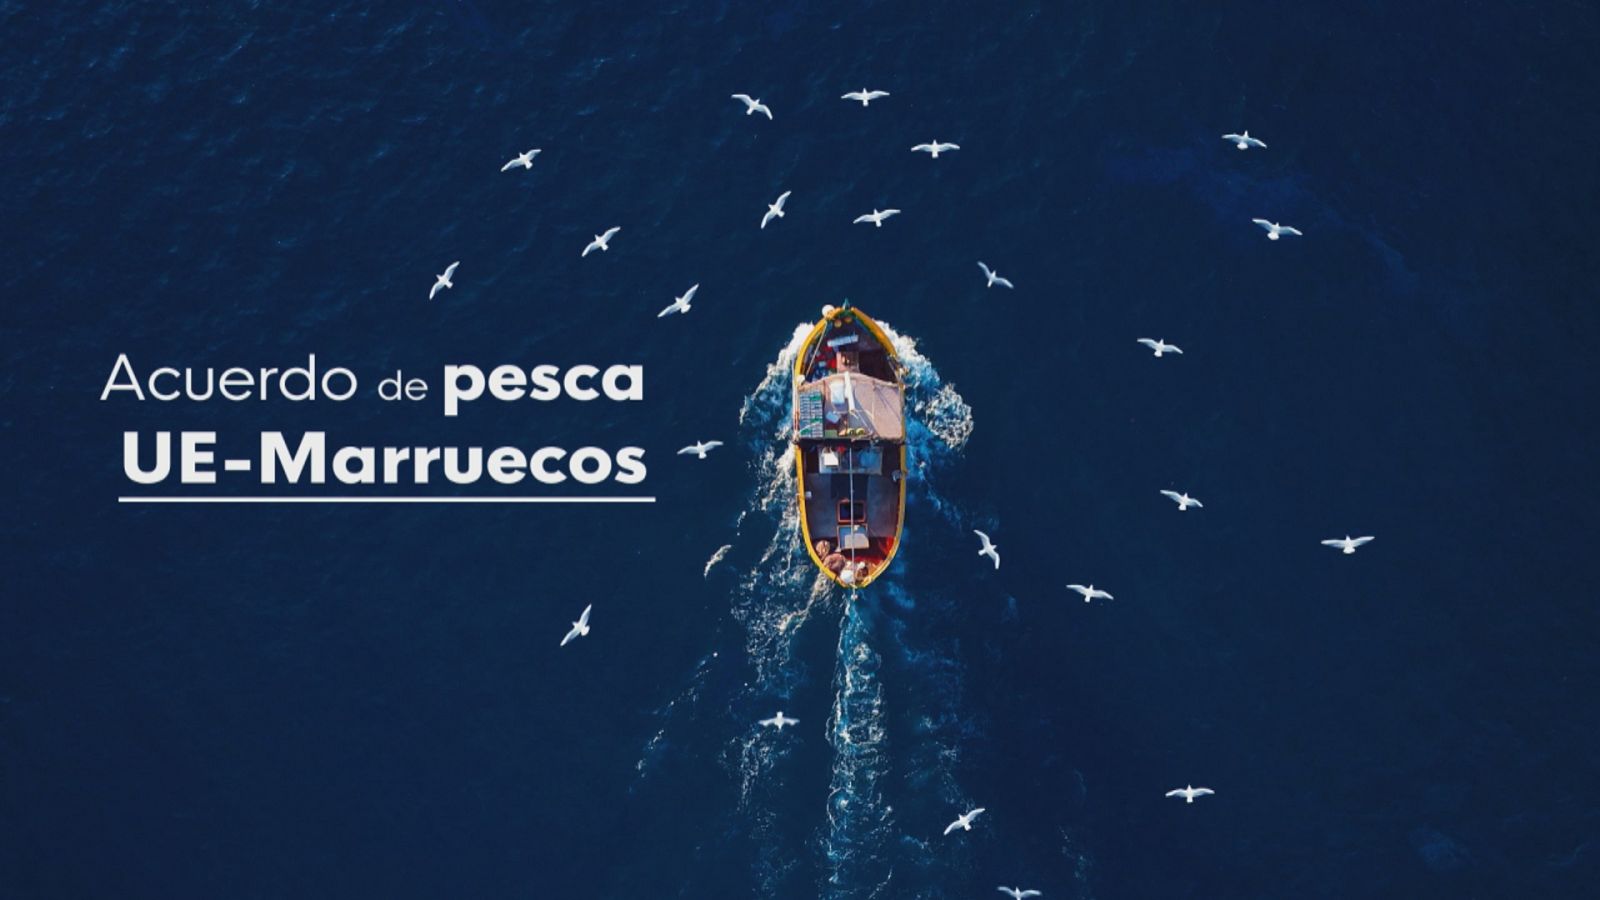 Fin al acuerdo de pesca con Marruecos - Ver ahora